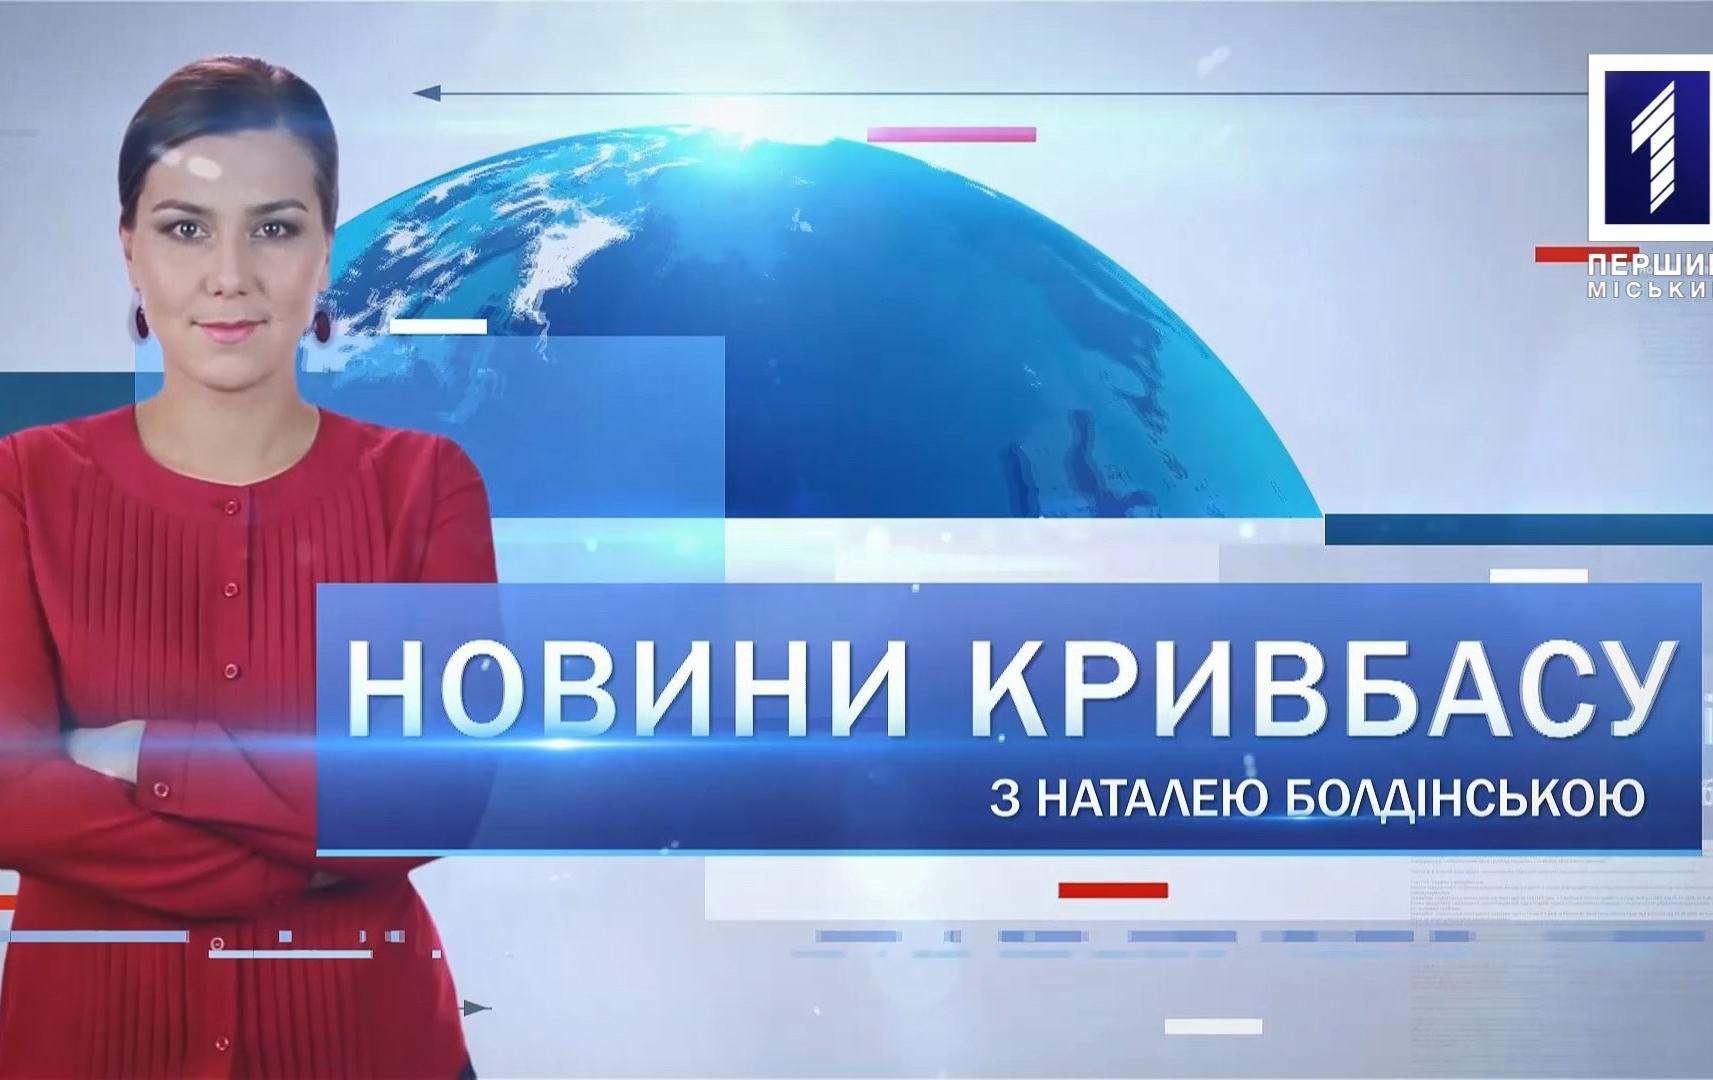 Новини Кривбасу 12 лютого: «Дія», догхантери, підпільний нафтопереробний завод